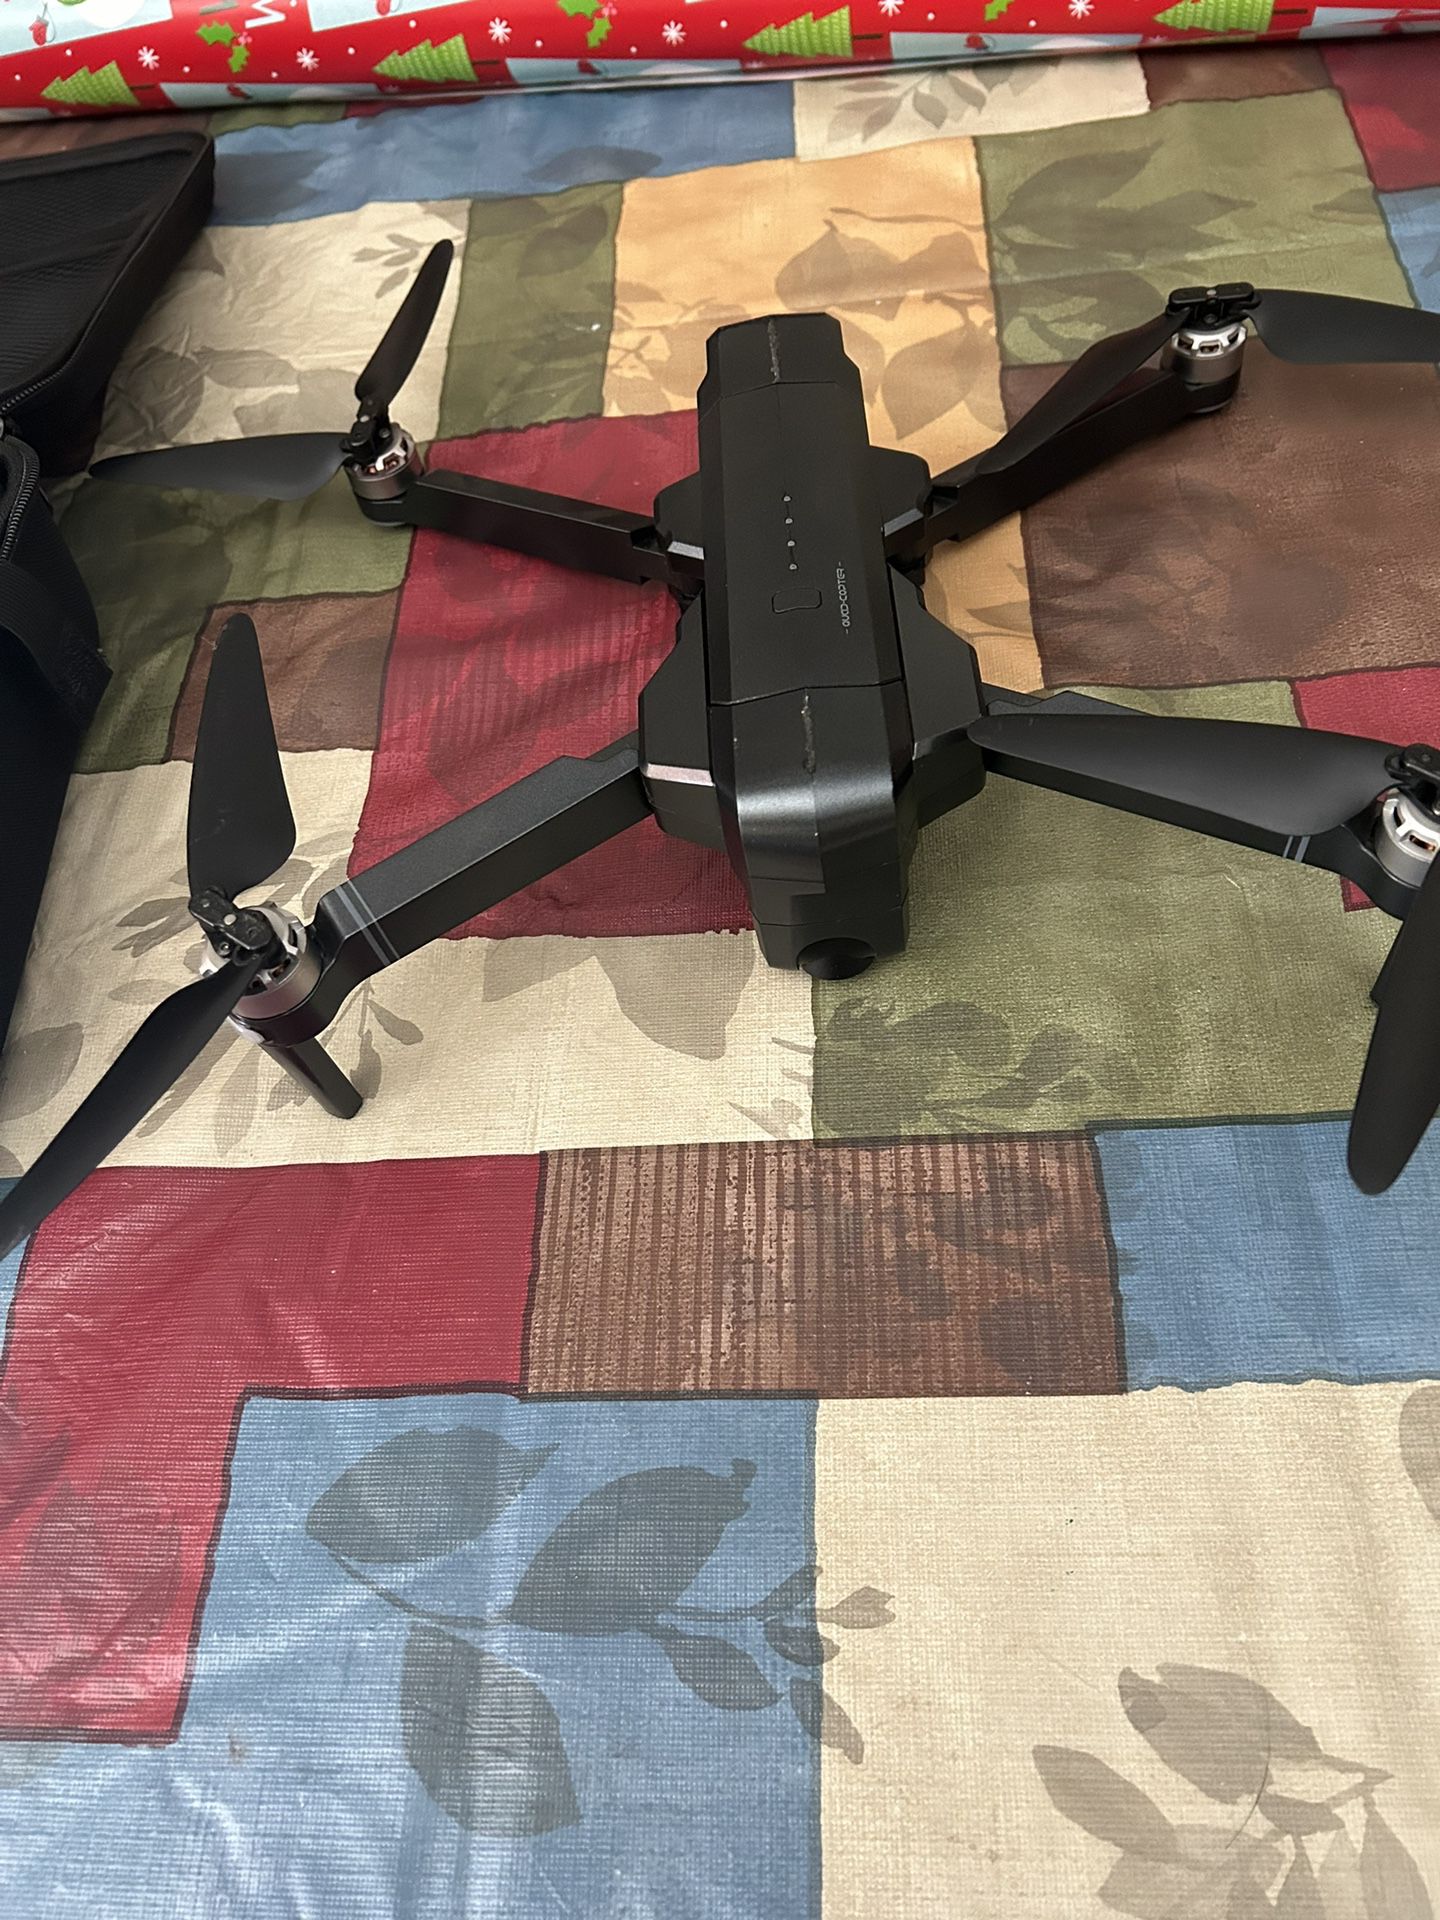 Ruko F11 Pro drone 